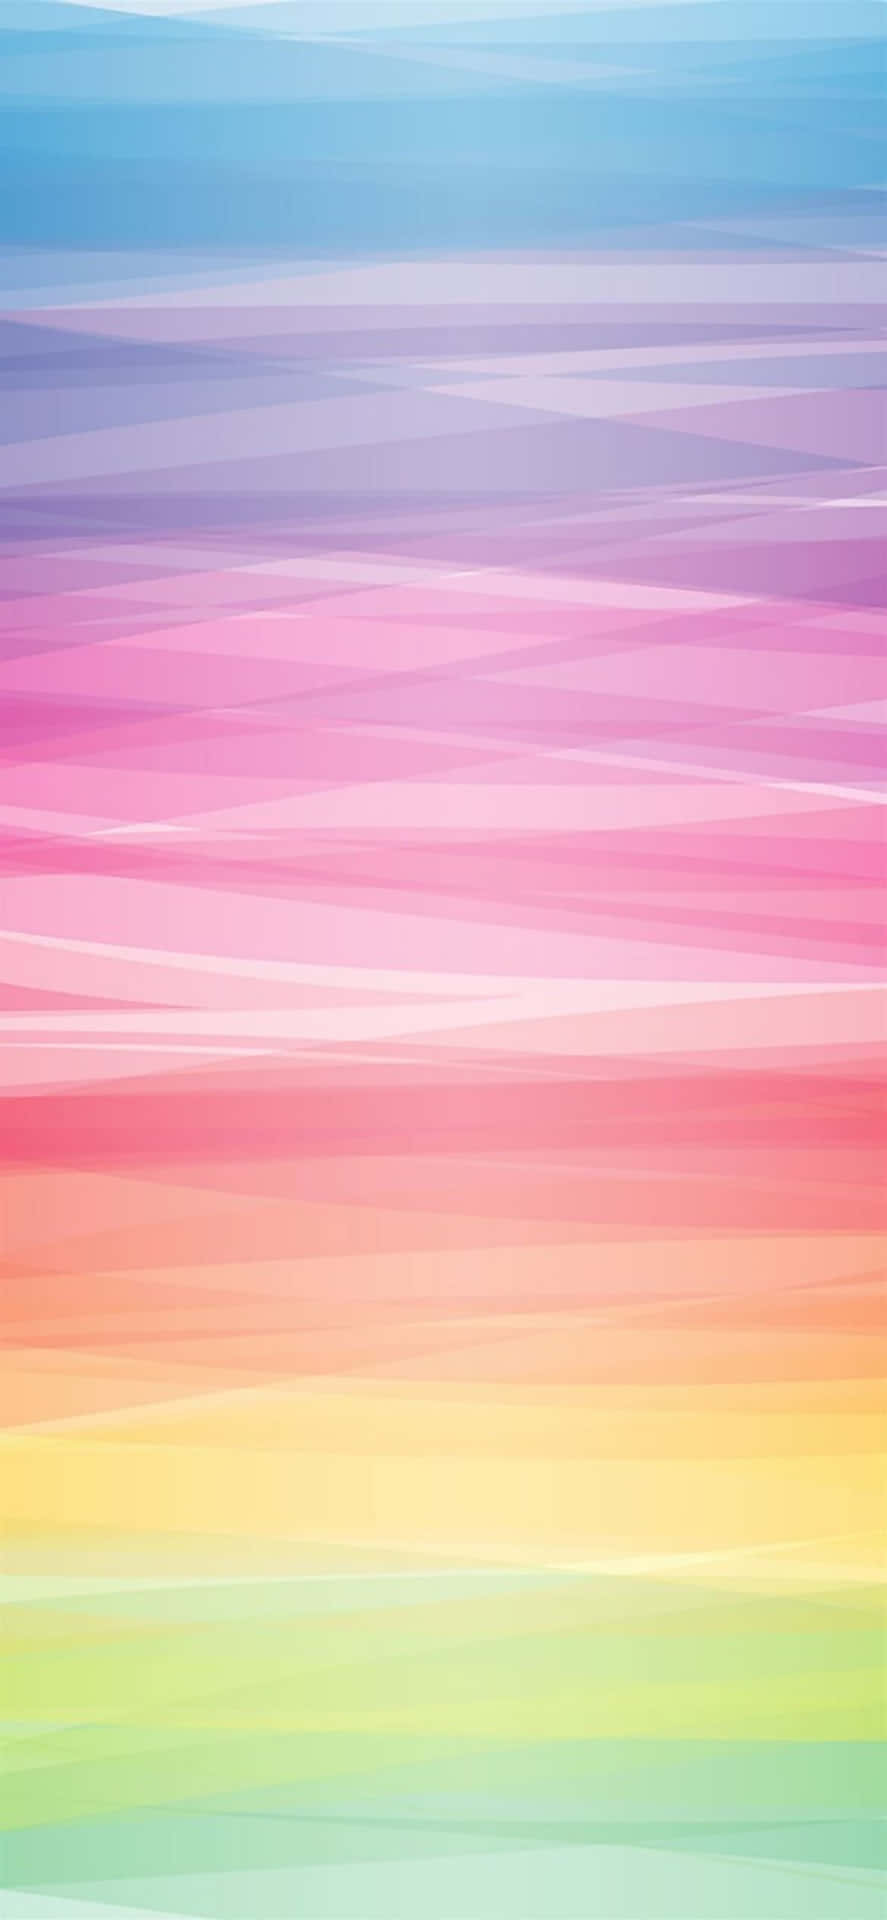 Backgroundnjut Av De Färgglada Vibbarna Av En Pastellregnbåge-tema Iphone-bakgrund. Wallpaper